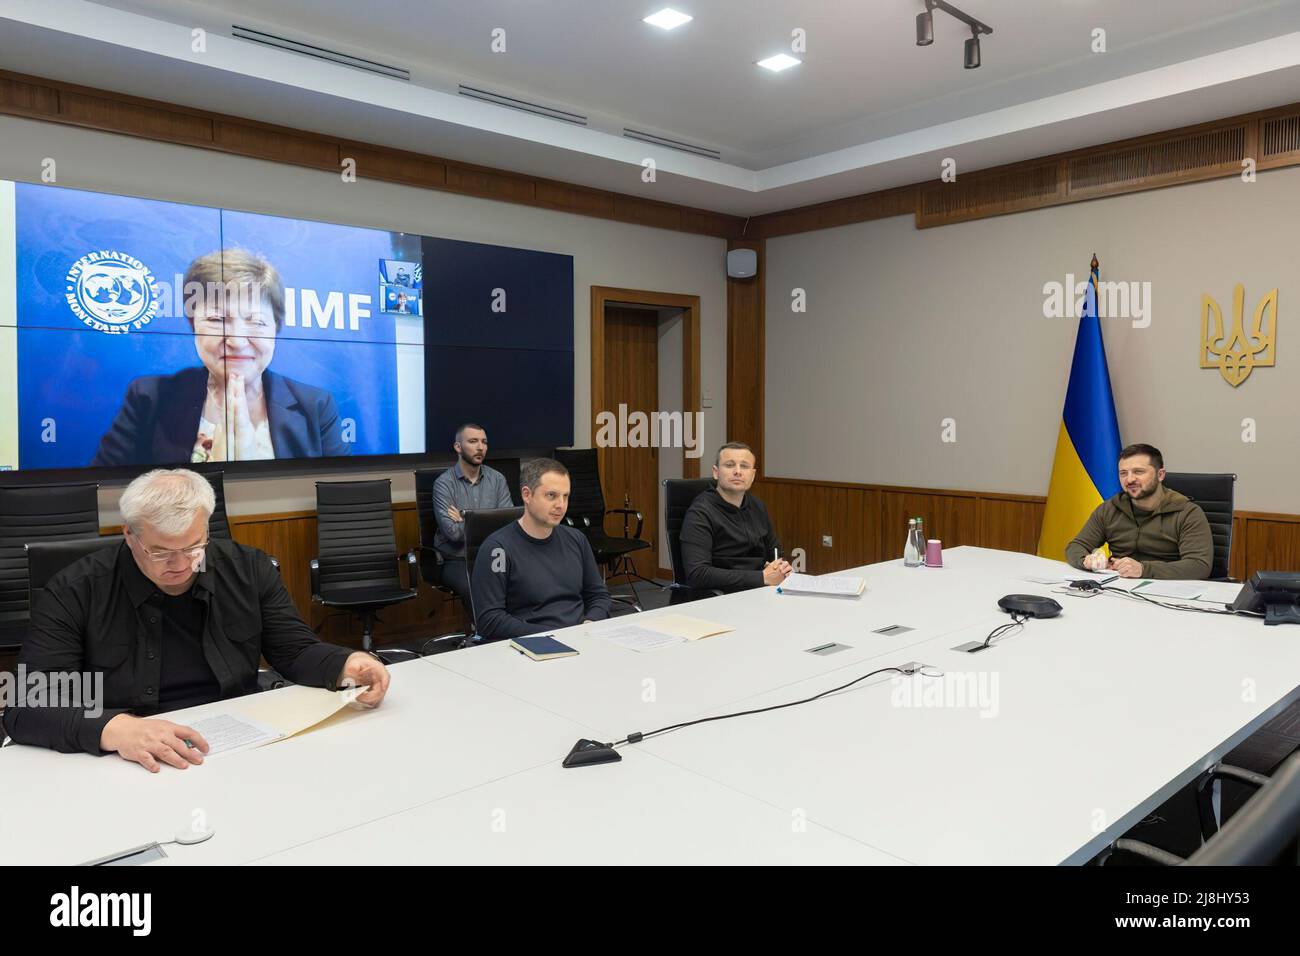 Die Präsidentin der Ukraine, Volodymyr Zelensky, hielt am Vorabend ihrer Teilnahme am Treffen der G7 Finanzminister eine Videokonferenz mit der Geschäftsführerin des Internationalen Währungsfonds, Kristalina Georgieva, ab. Der Präsident dankte dem IWF für die Unterstützung der ukrainischen Wirtschaft in den schwierigen Zeiten des Krieges. „Vielen Dank, dass Sie eine Führungspersönlichkeit in den Fragen der Unterstützung und der Überwindung dieser Situation haben“, sagte Volodymyr Zelenskyy. Nach Angaben des Präsidenten beträgt das monatliche Defizit des Staatshaushalts der Ukraine etwa 5 Milliarden US-Dollar. Deshalb rief er den IWF auf, die Unterstützung zu beschleunigen. Stockfoto